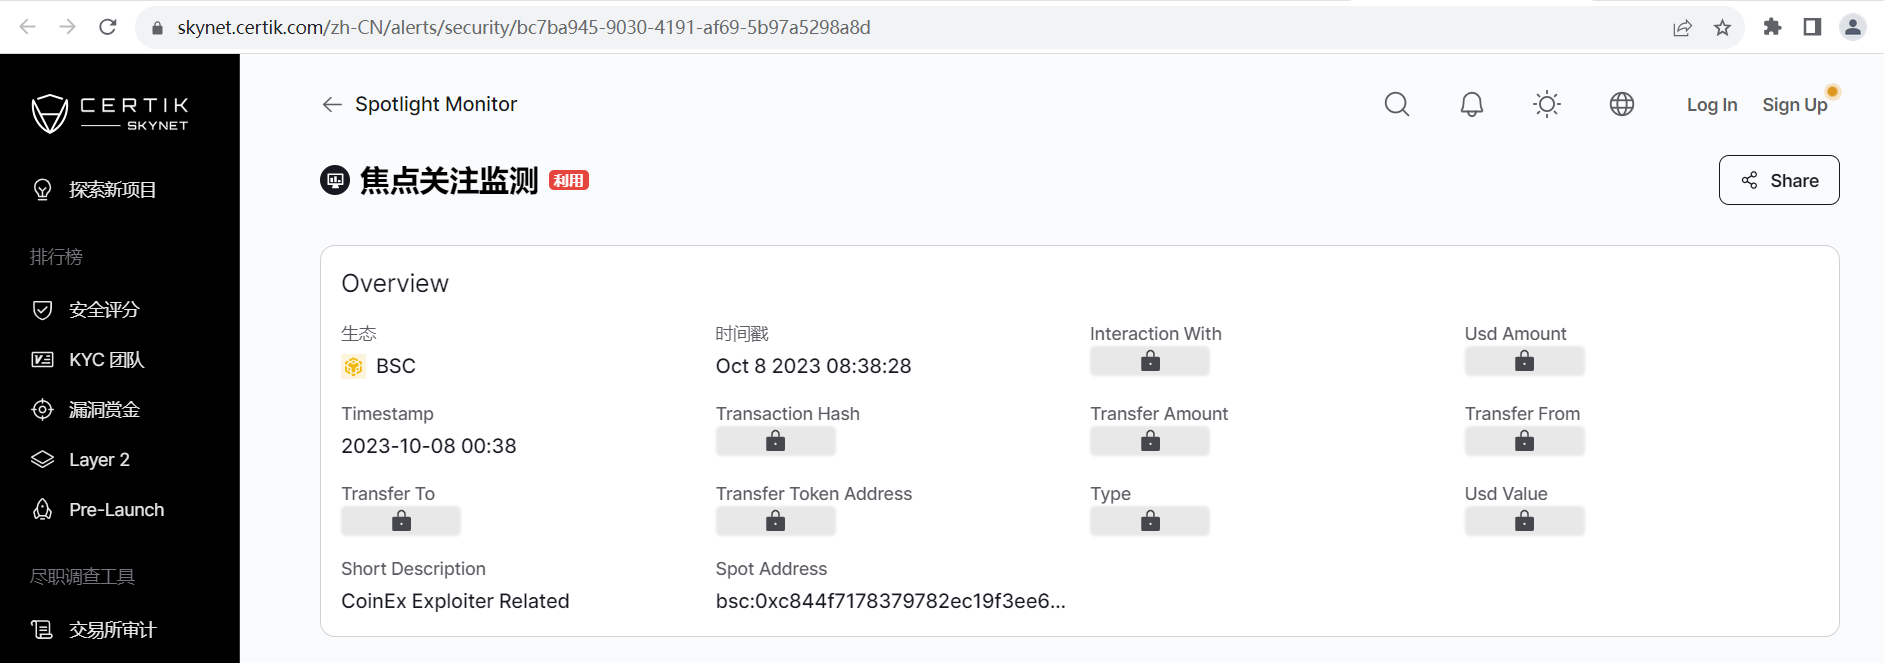 CoinEx攻击者将近1.5万枚BNB经中间地址以小金额发送至不同钱包